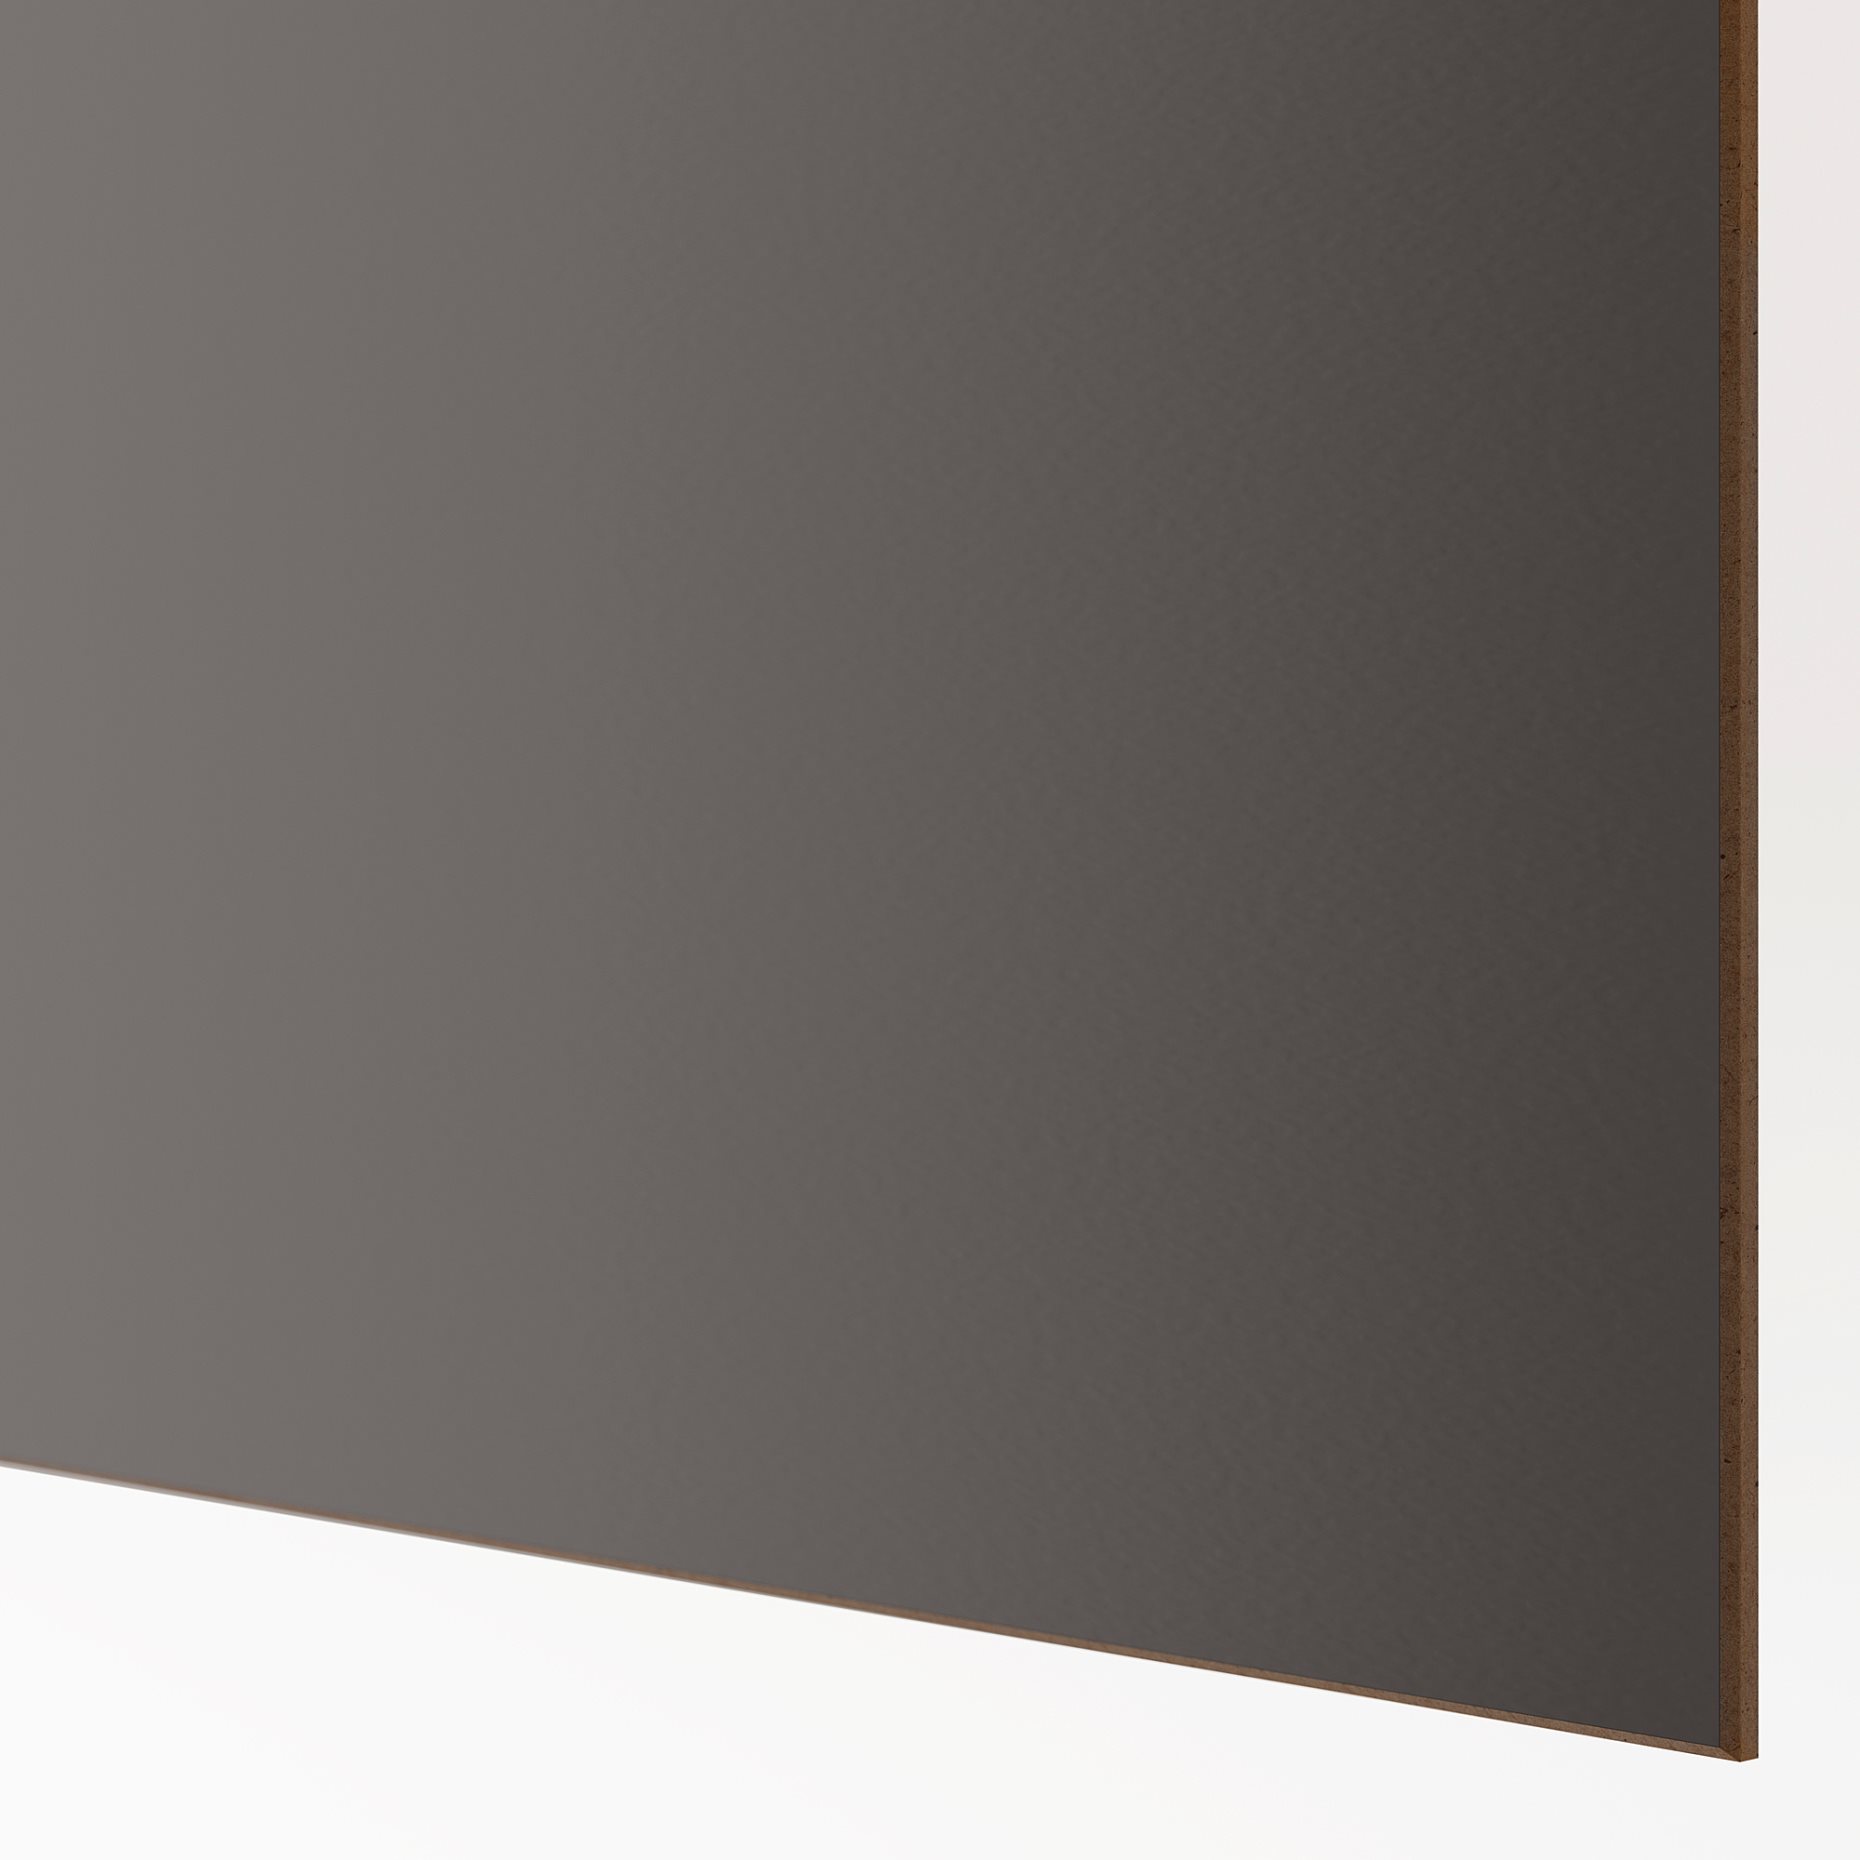 MEHAMN, 4 panels for sliding door frame, 75x201 cm, 705.109.08